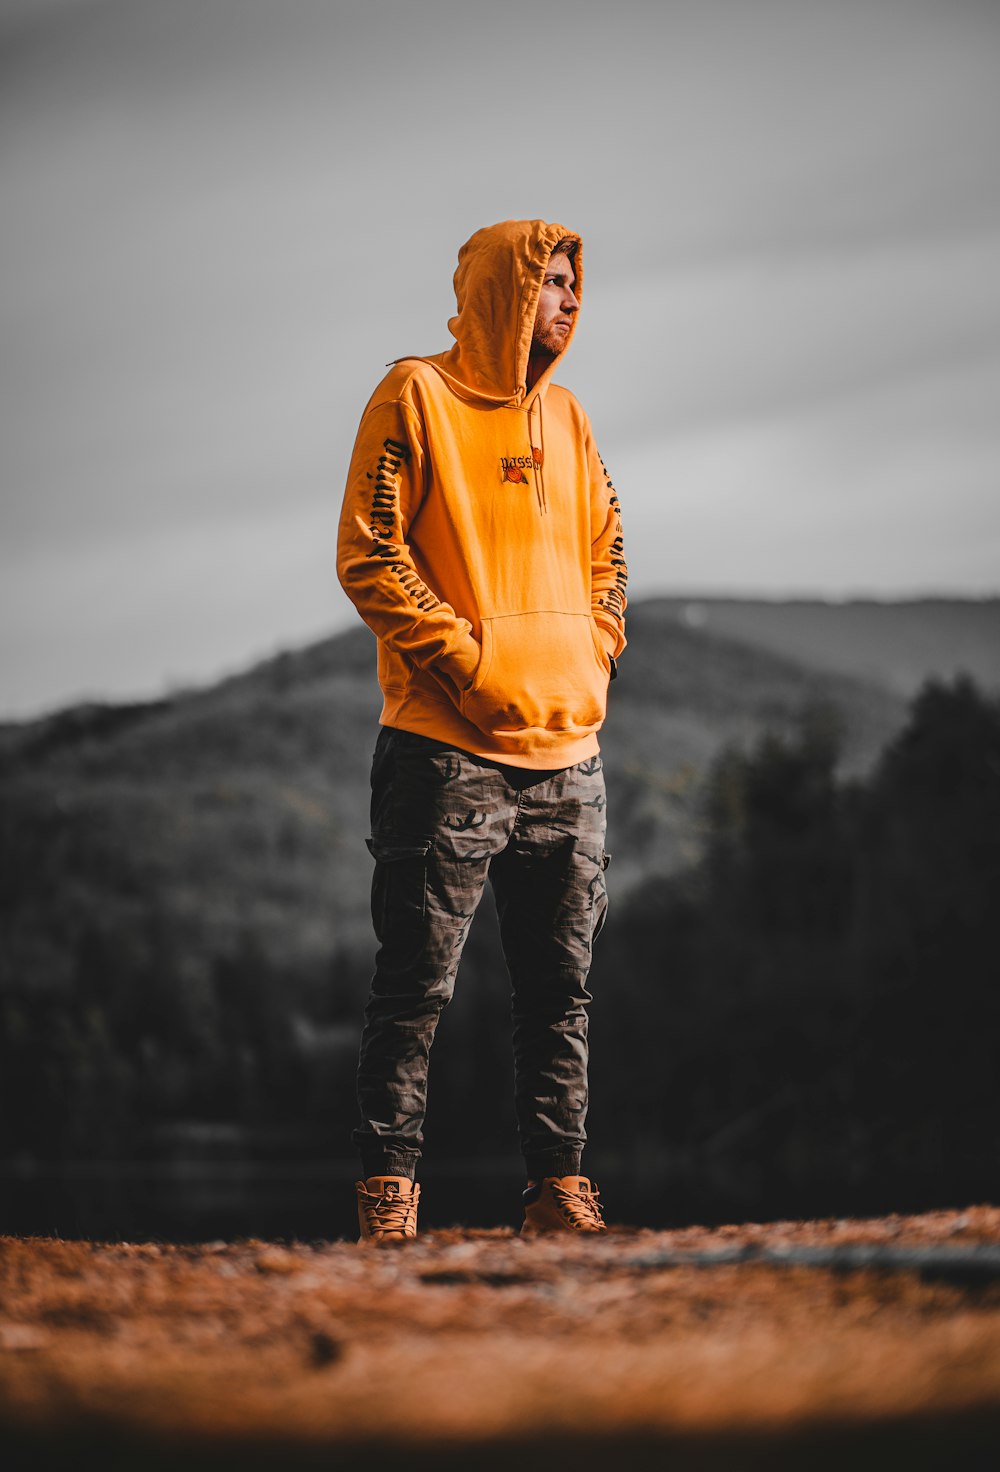 Mann in orangefarbenem Kapuzenpulli, der tagsüber auf Felsen in der Nähe eines Gewässers steht